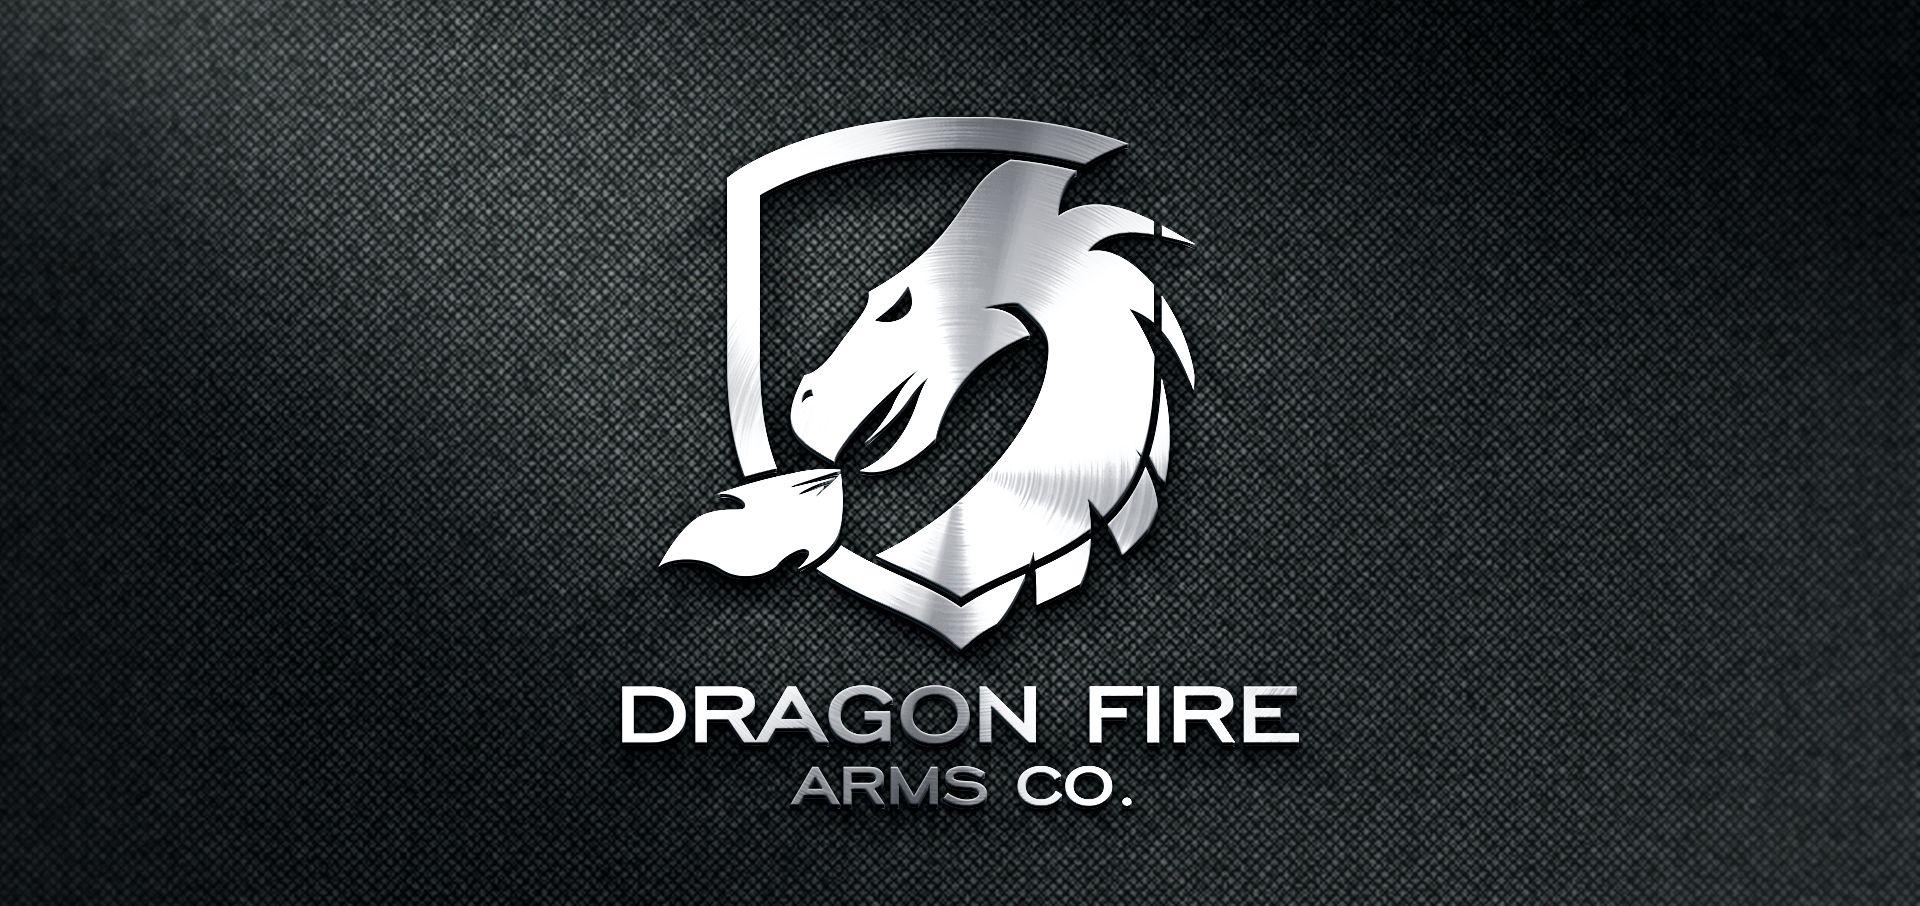 Silver Dragon Logo - Logo design for the company Dragon Fire Arms